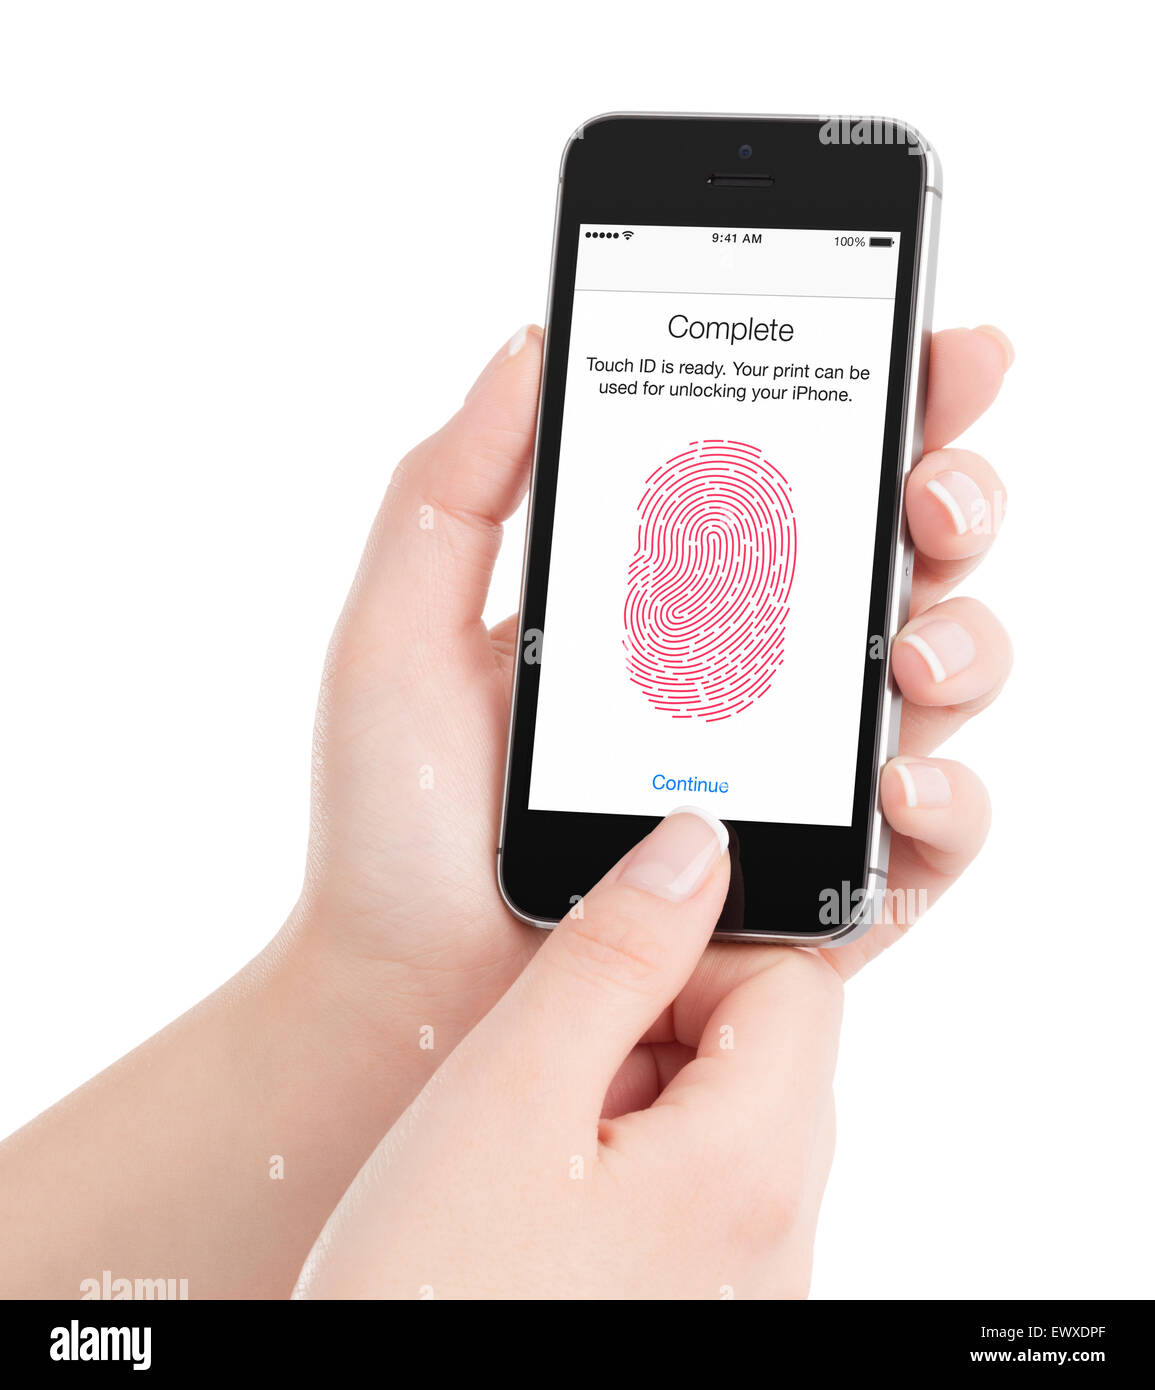 Varna, Bulgarien - 7. Dezember 2013: Frau ist Fingerabdruck von Apple Space Grau iPhone 5 s Touch ID, entworfen von Apple Inc Scannen Stockfoto